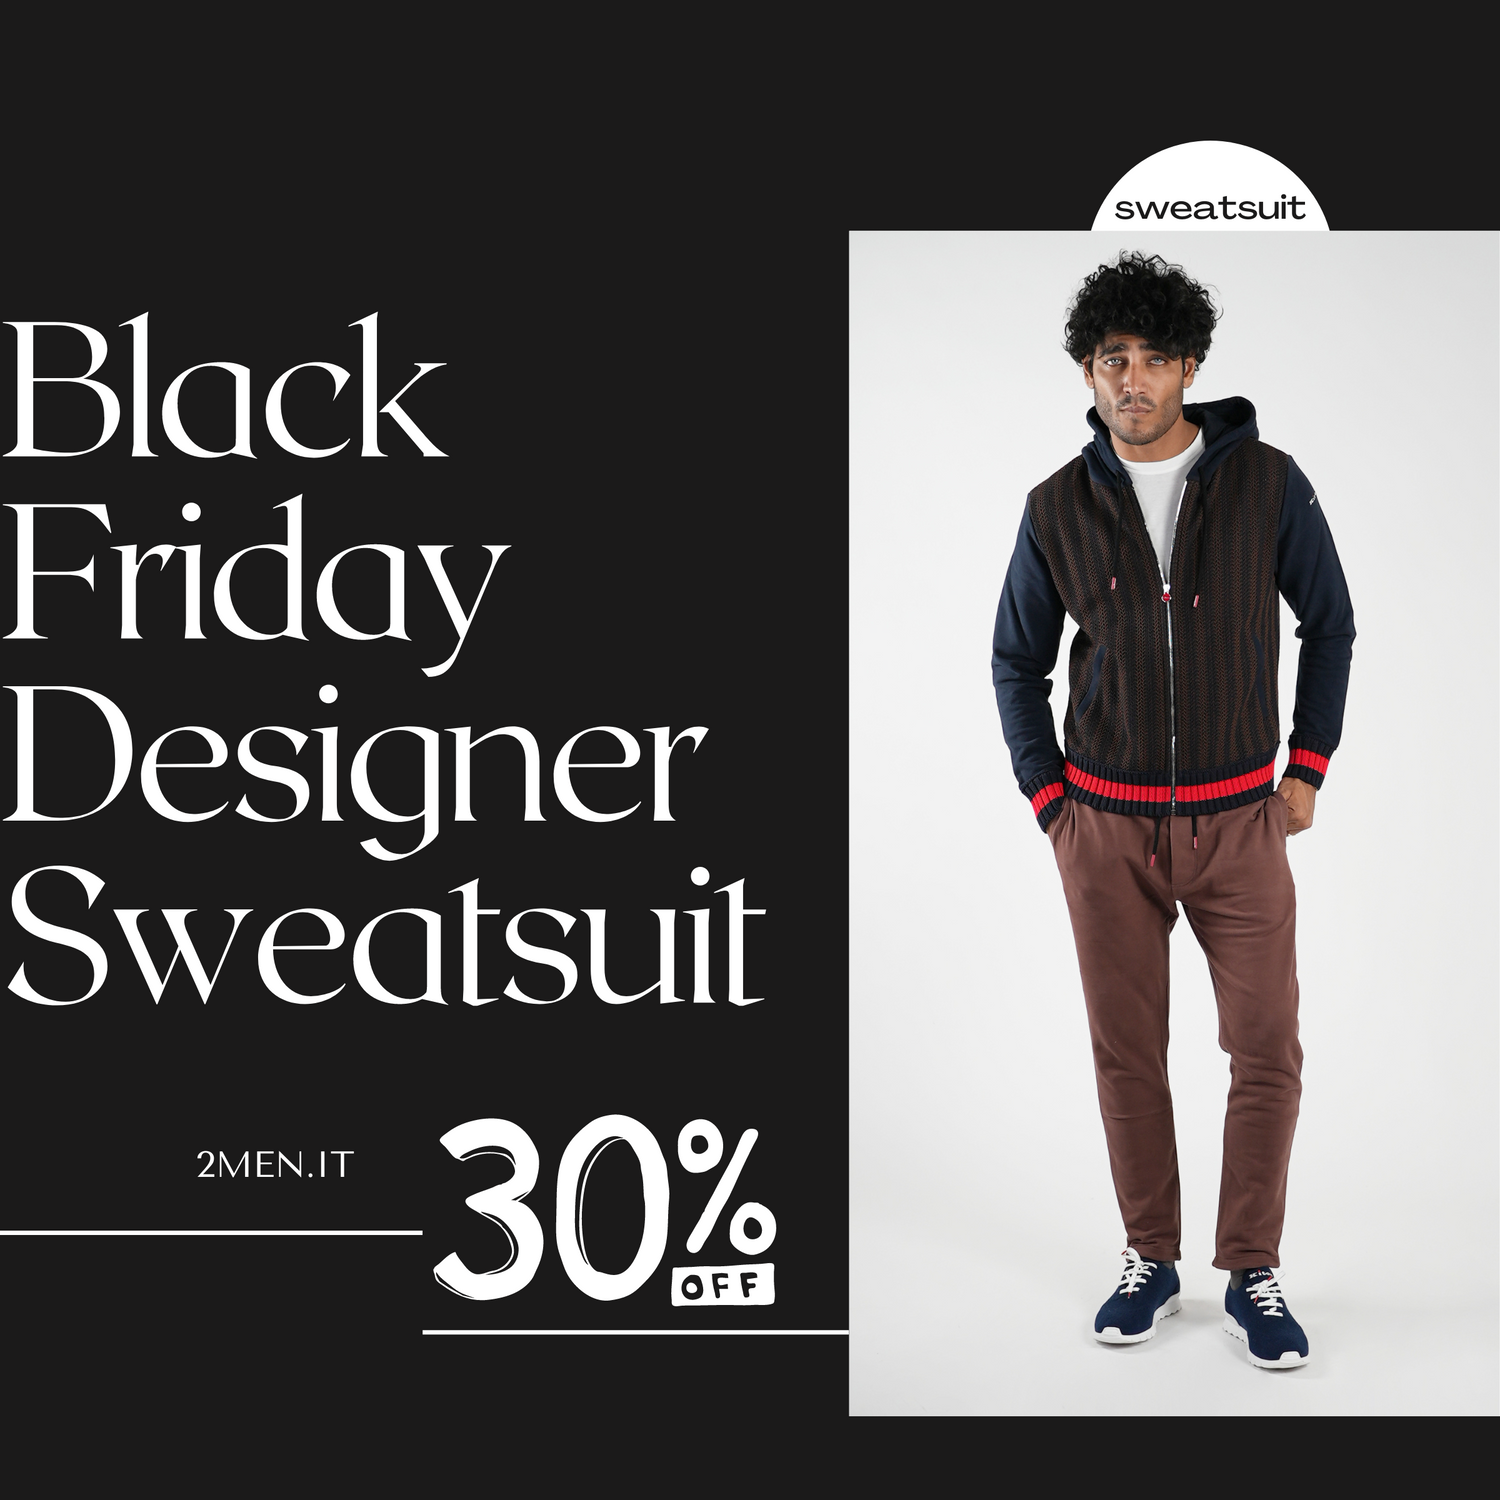 Best Black Friday Italian Designer Sweatsuits Coat Deals FOR MEN - 30% OFF SALE